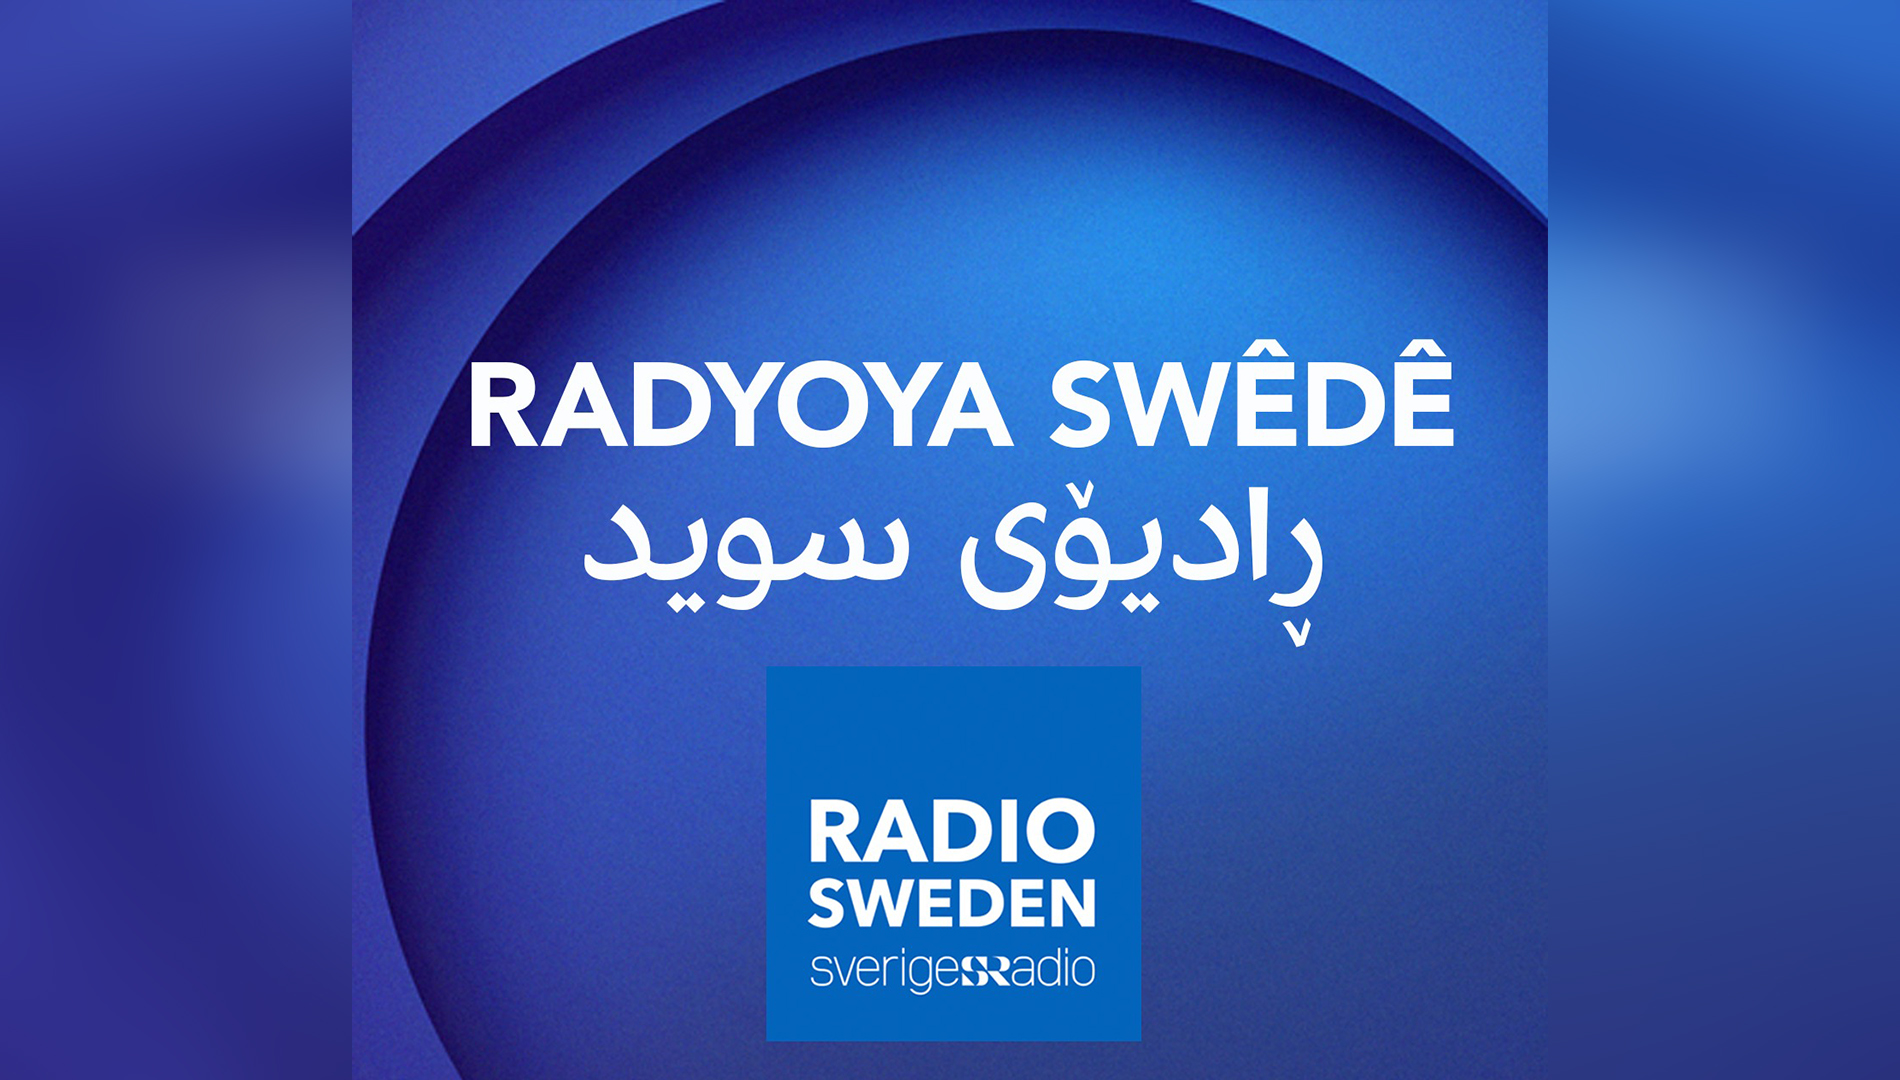 ژمارەیەک چالاکوانى کورد داواى راگرتنى بڕیارى داخستنى بەشى رادیۆى کوردى لە سوید دەکەن